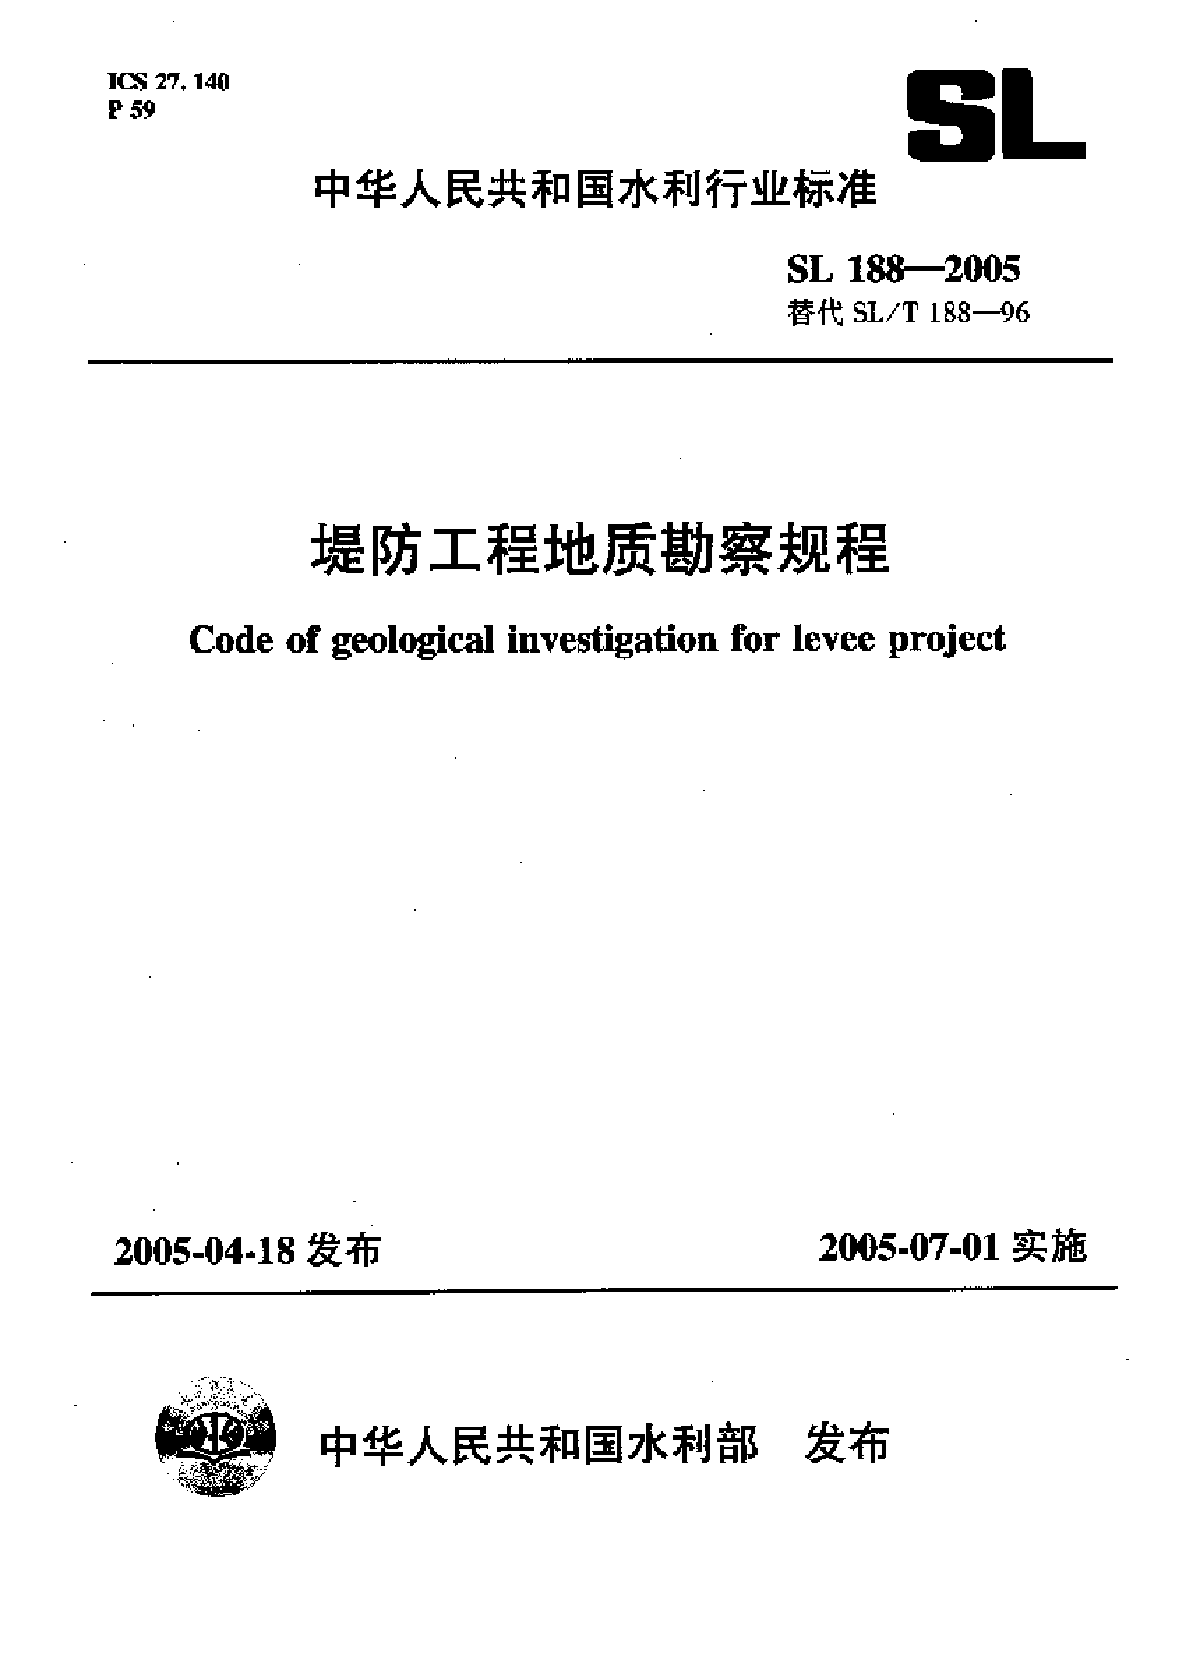 《堤防工程地质勘察规程》(SL188-2005)